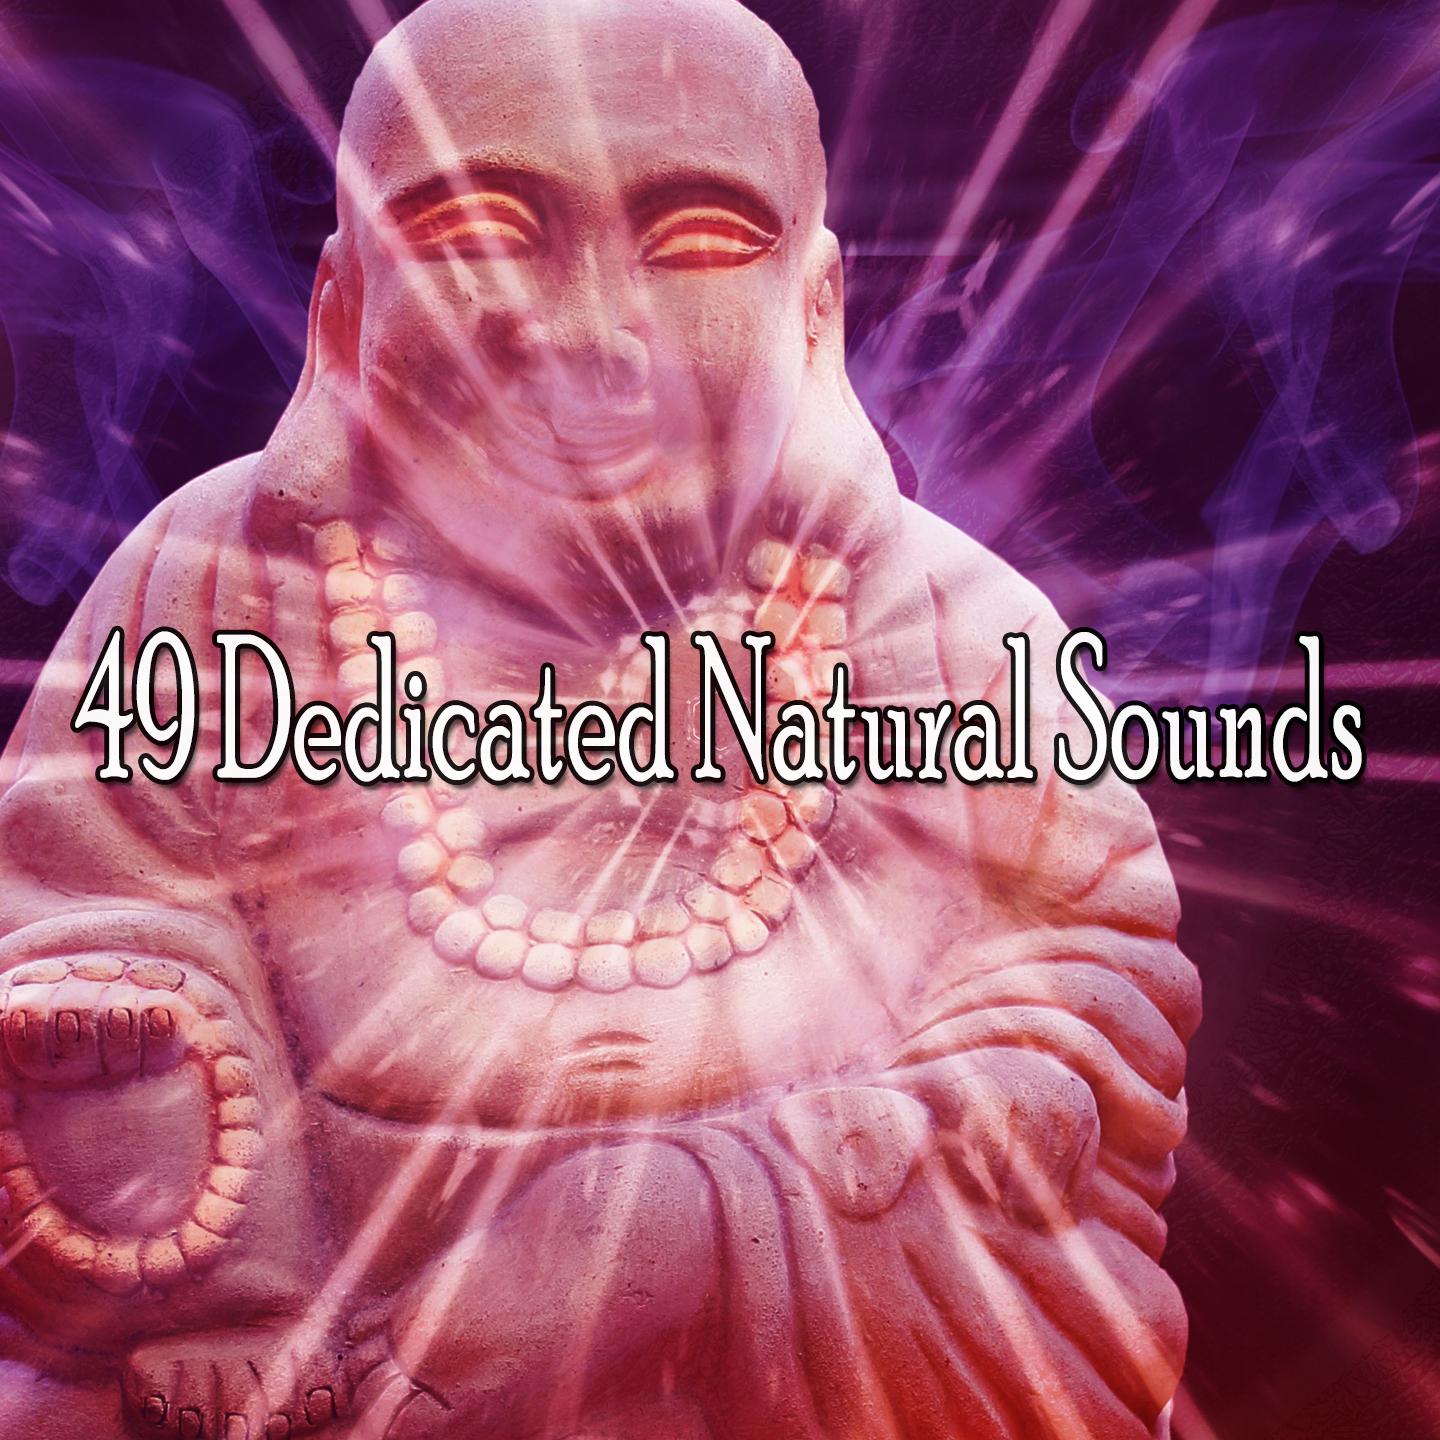 49 Dedicated Natural Sounds